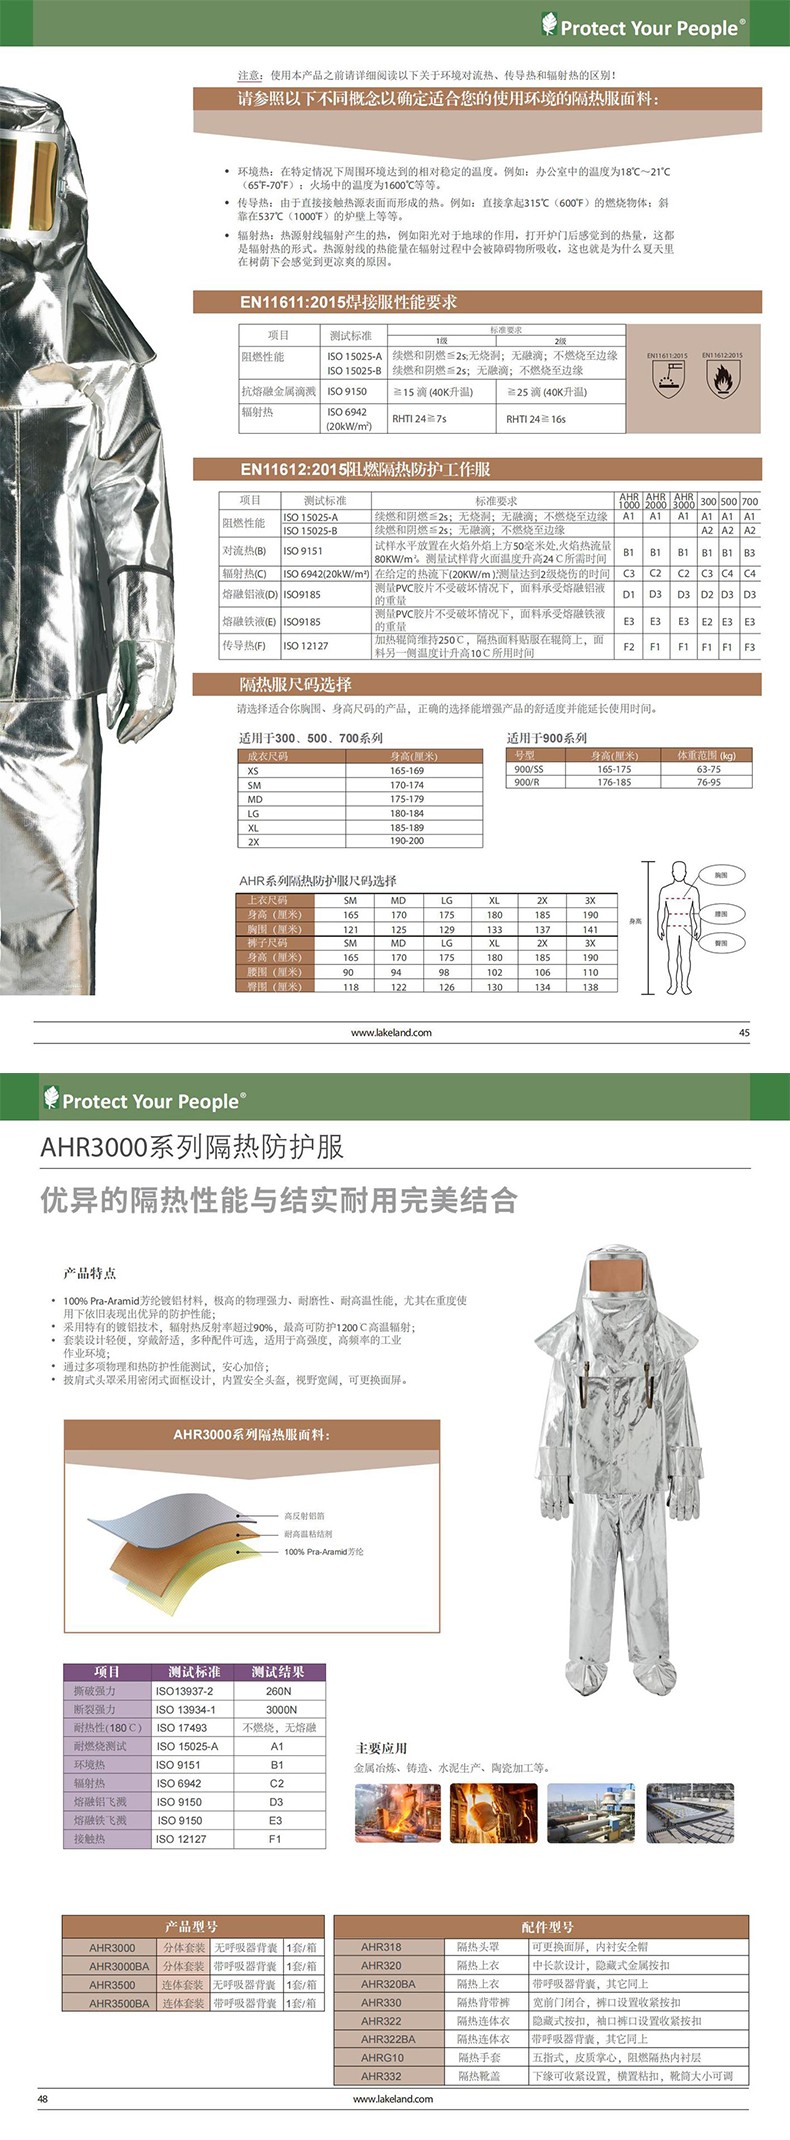 雷克兰AHR330芳纶镀铝隔热背带裤图片